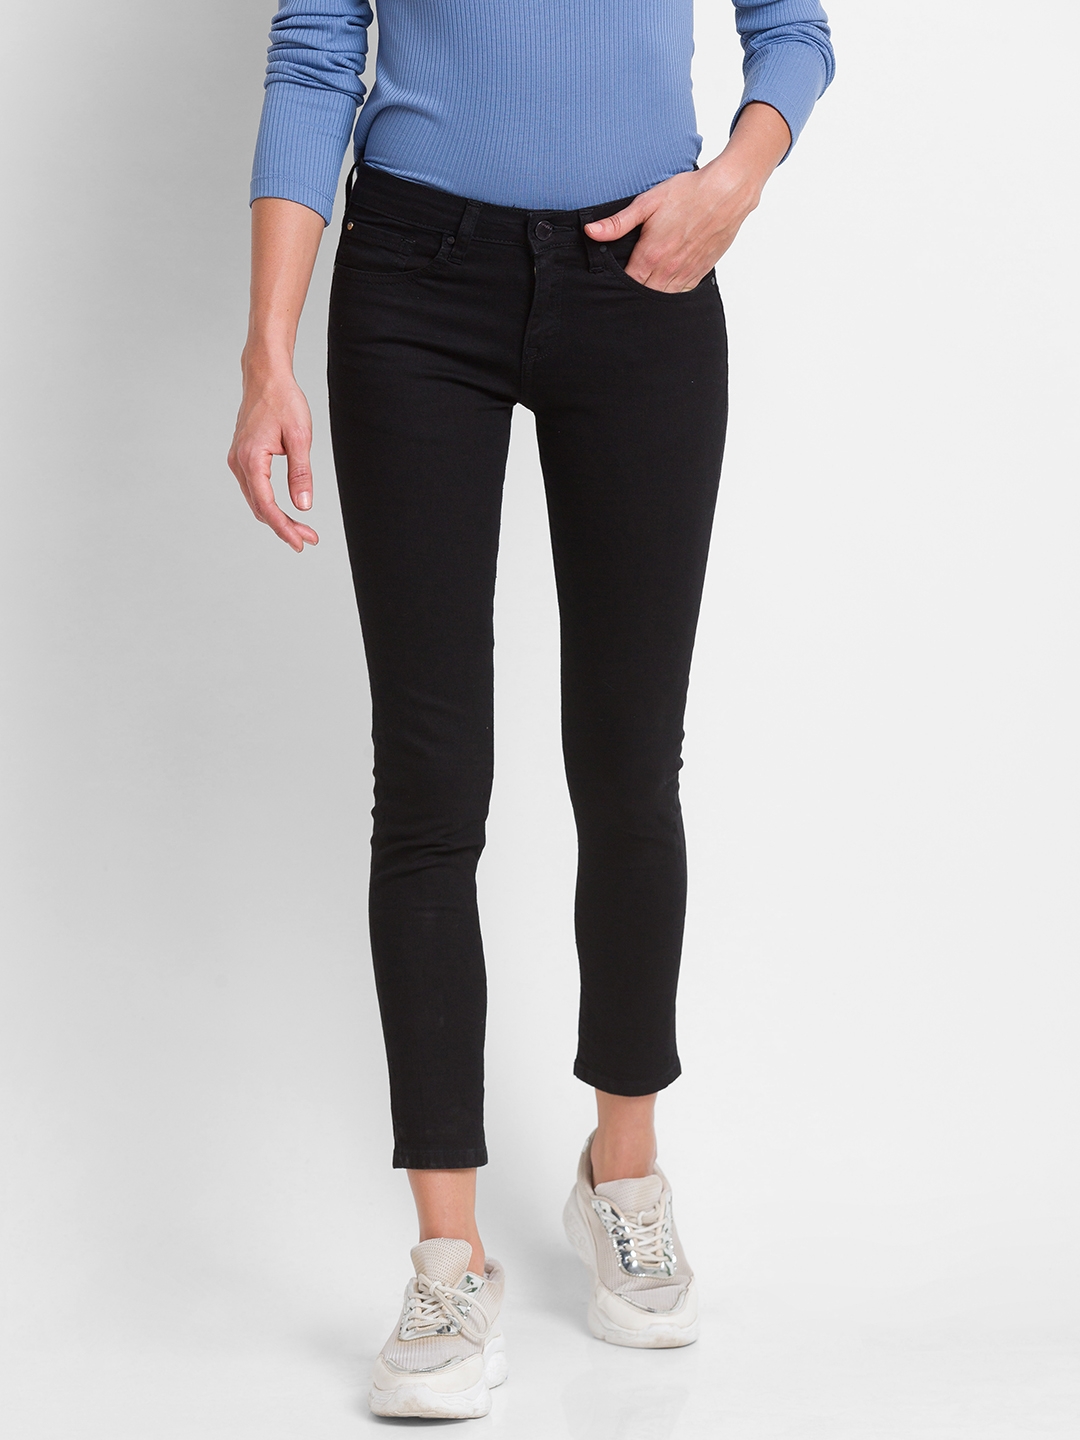 Women's Black Lycra Solid Skinny Jeans